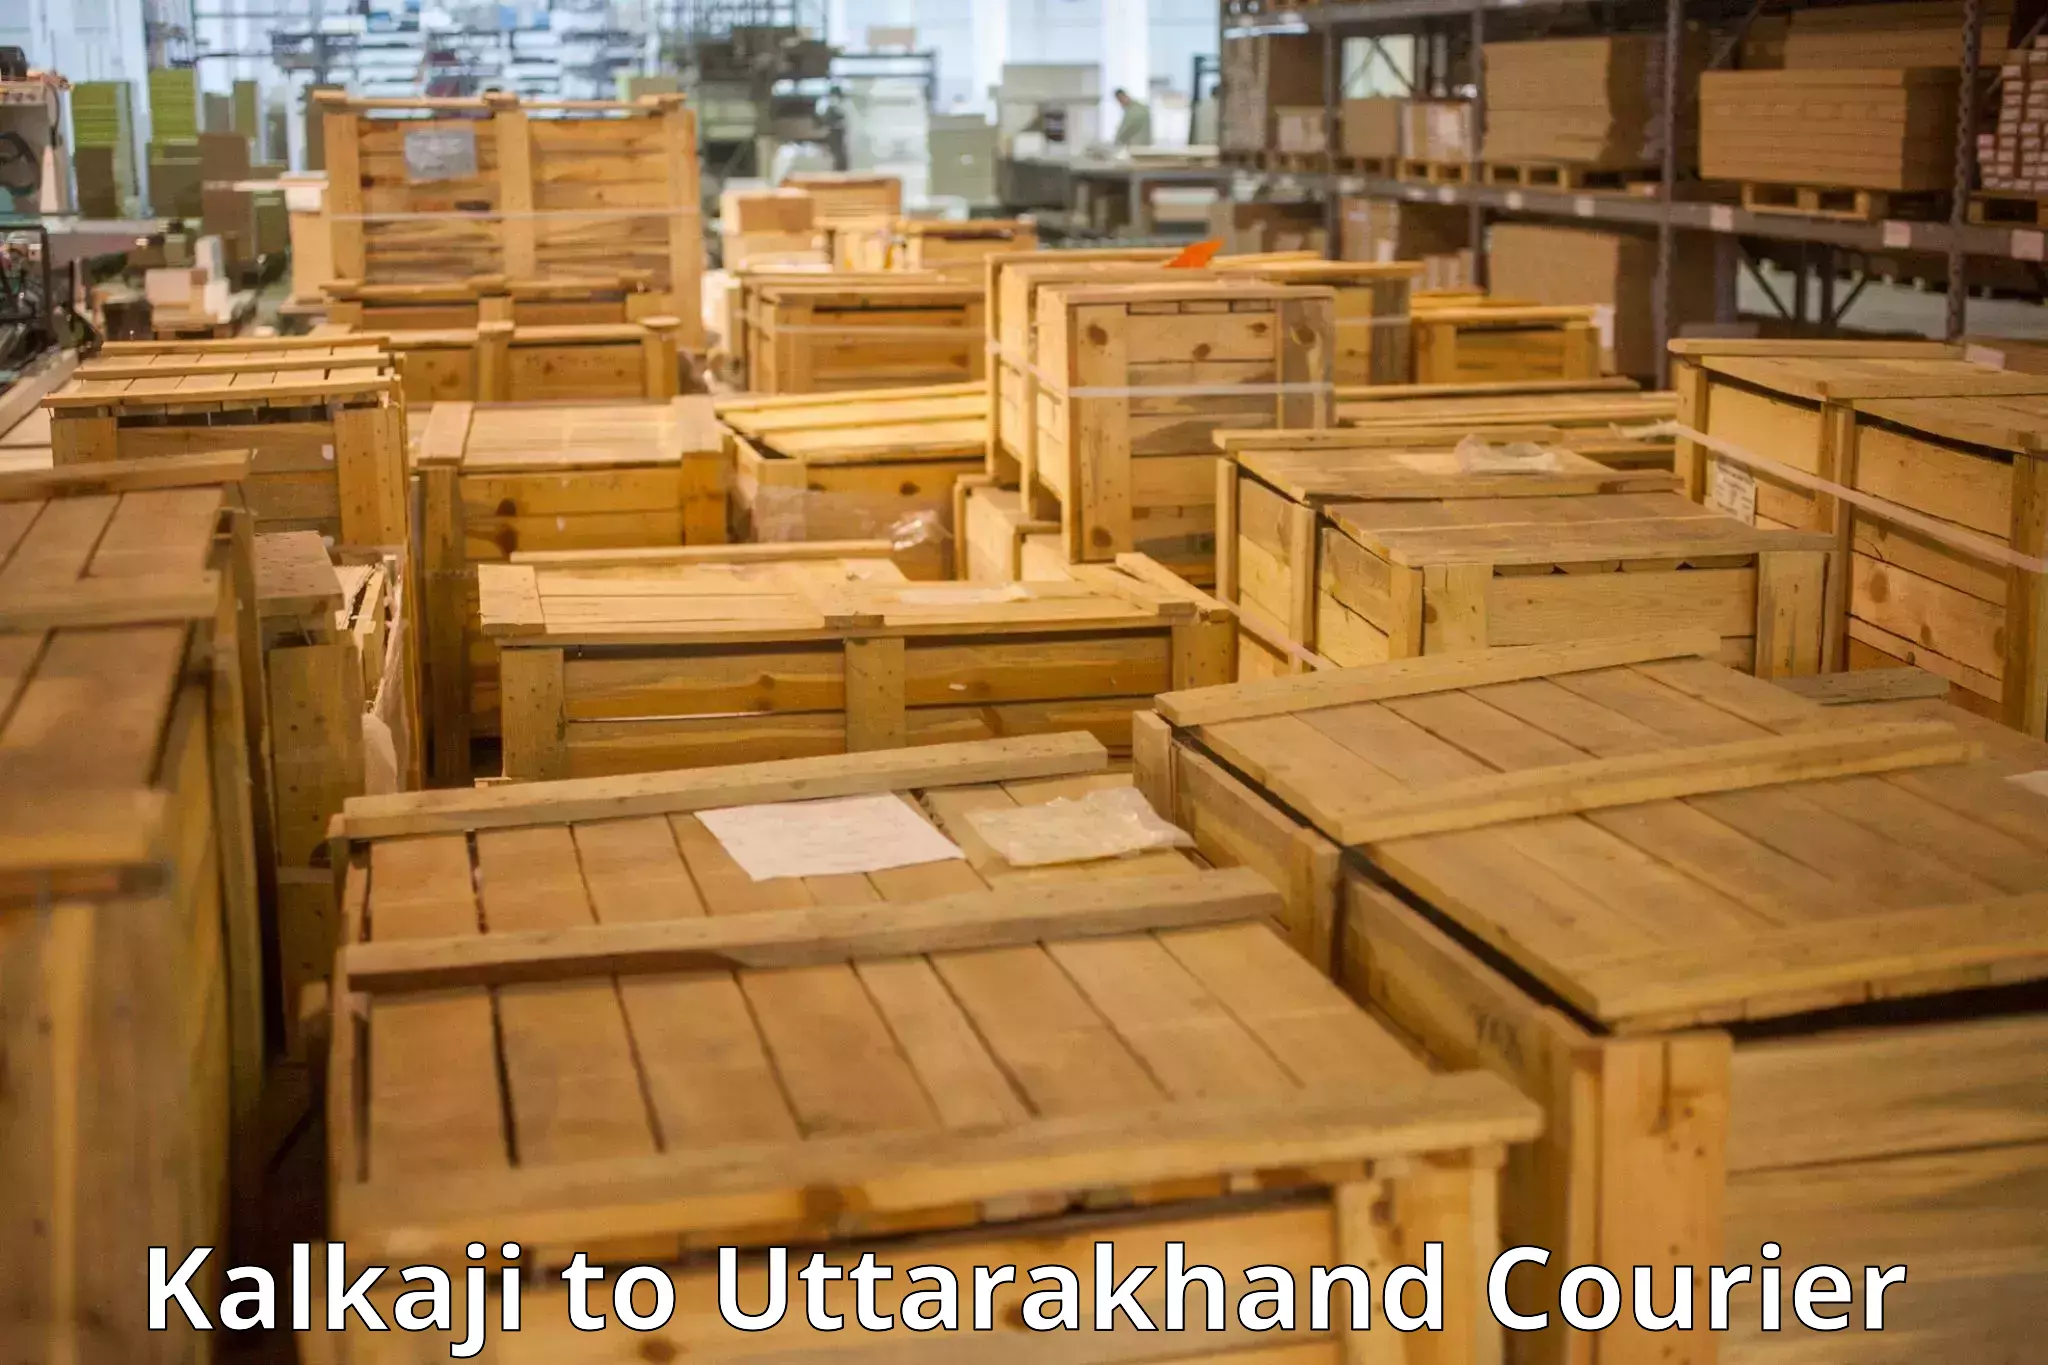 Baggage transport updates Kalkaji to Laksar